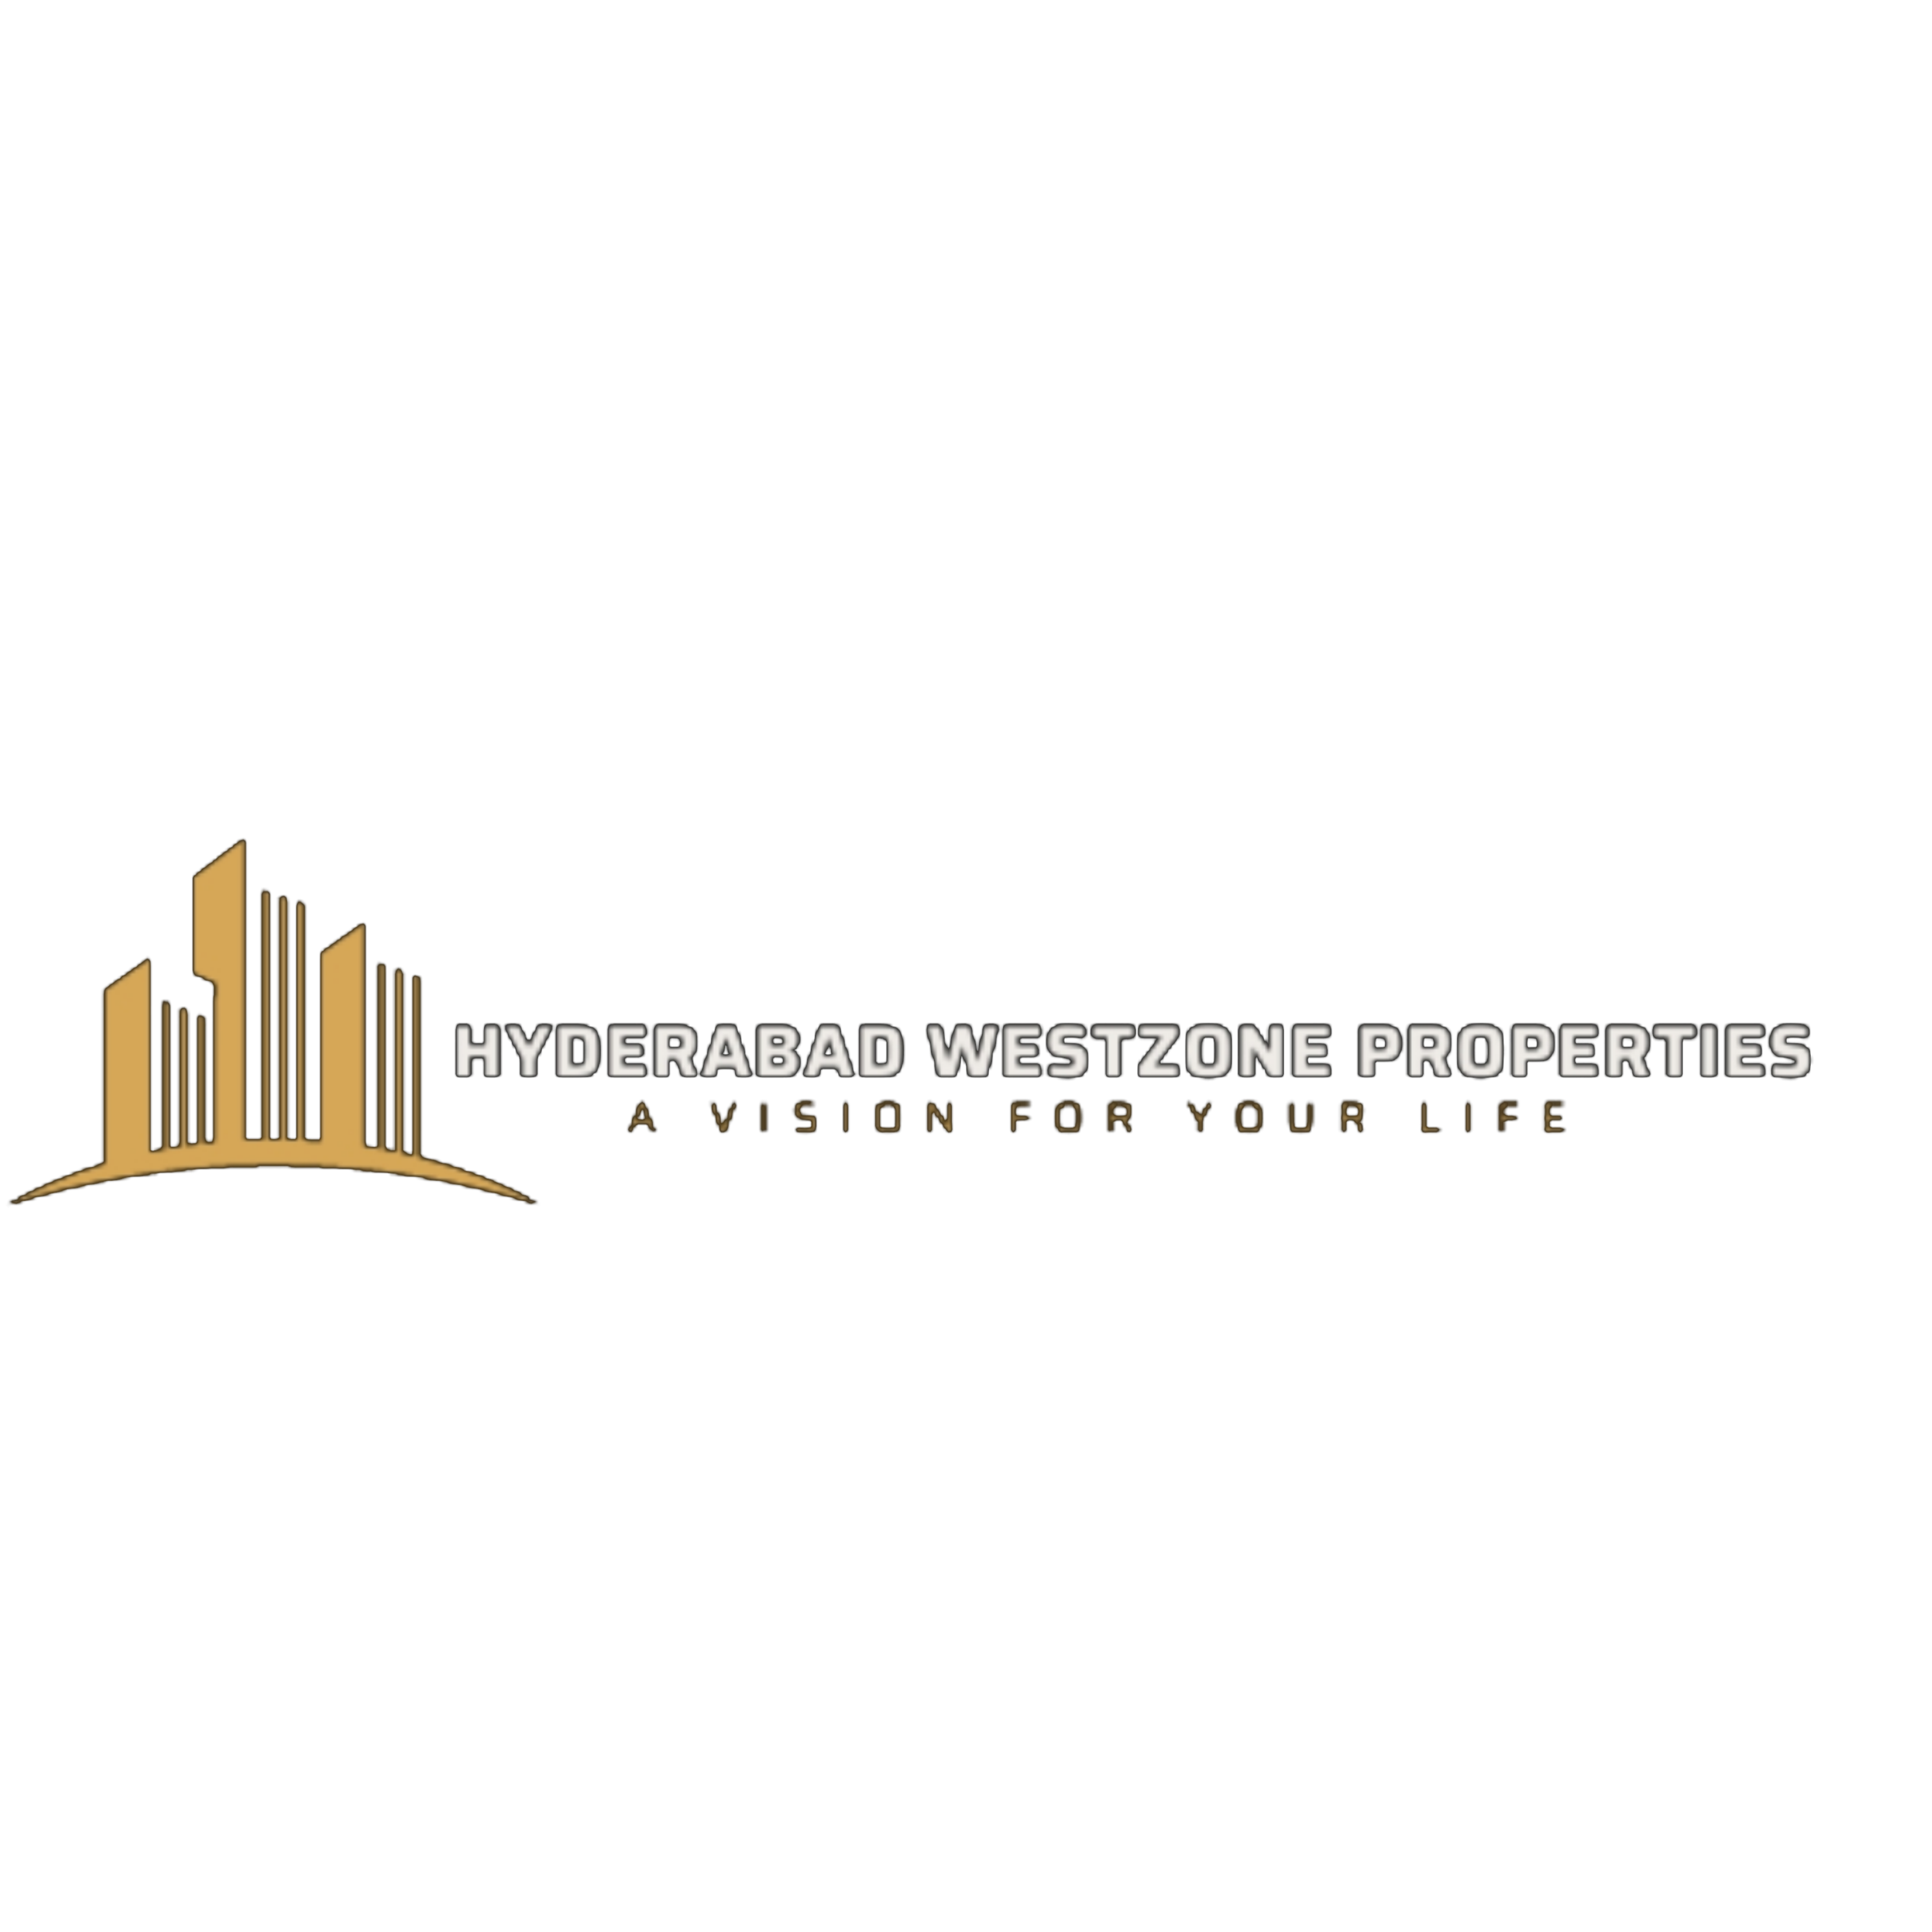 Hyderabad westzone properties